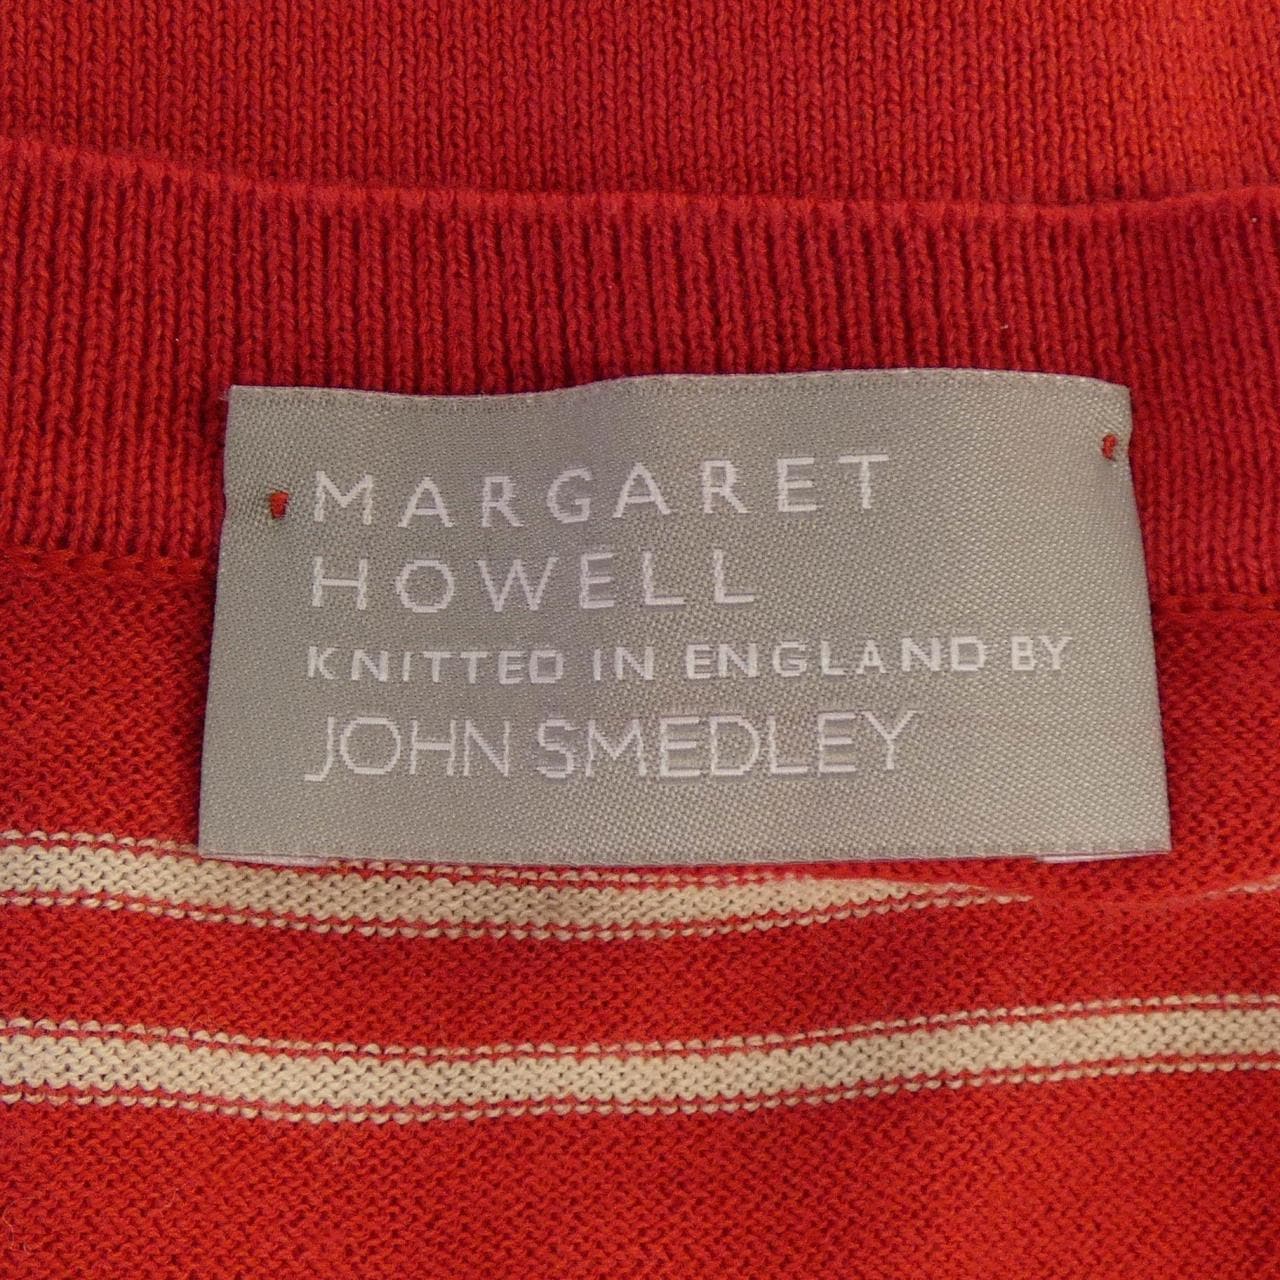 玛格丽特Howell Margaret Howell针织衫